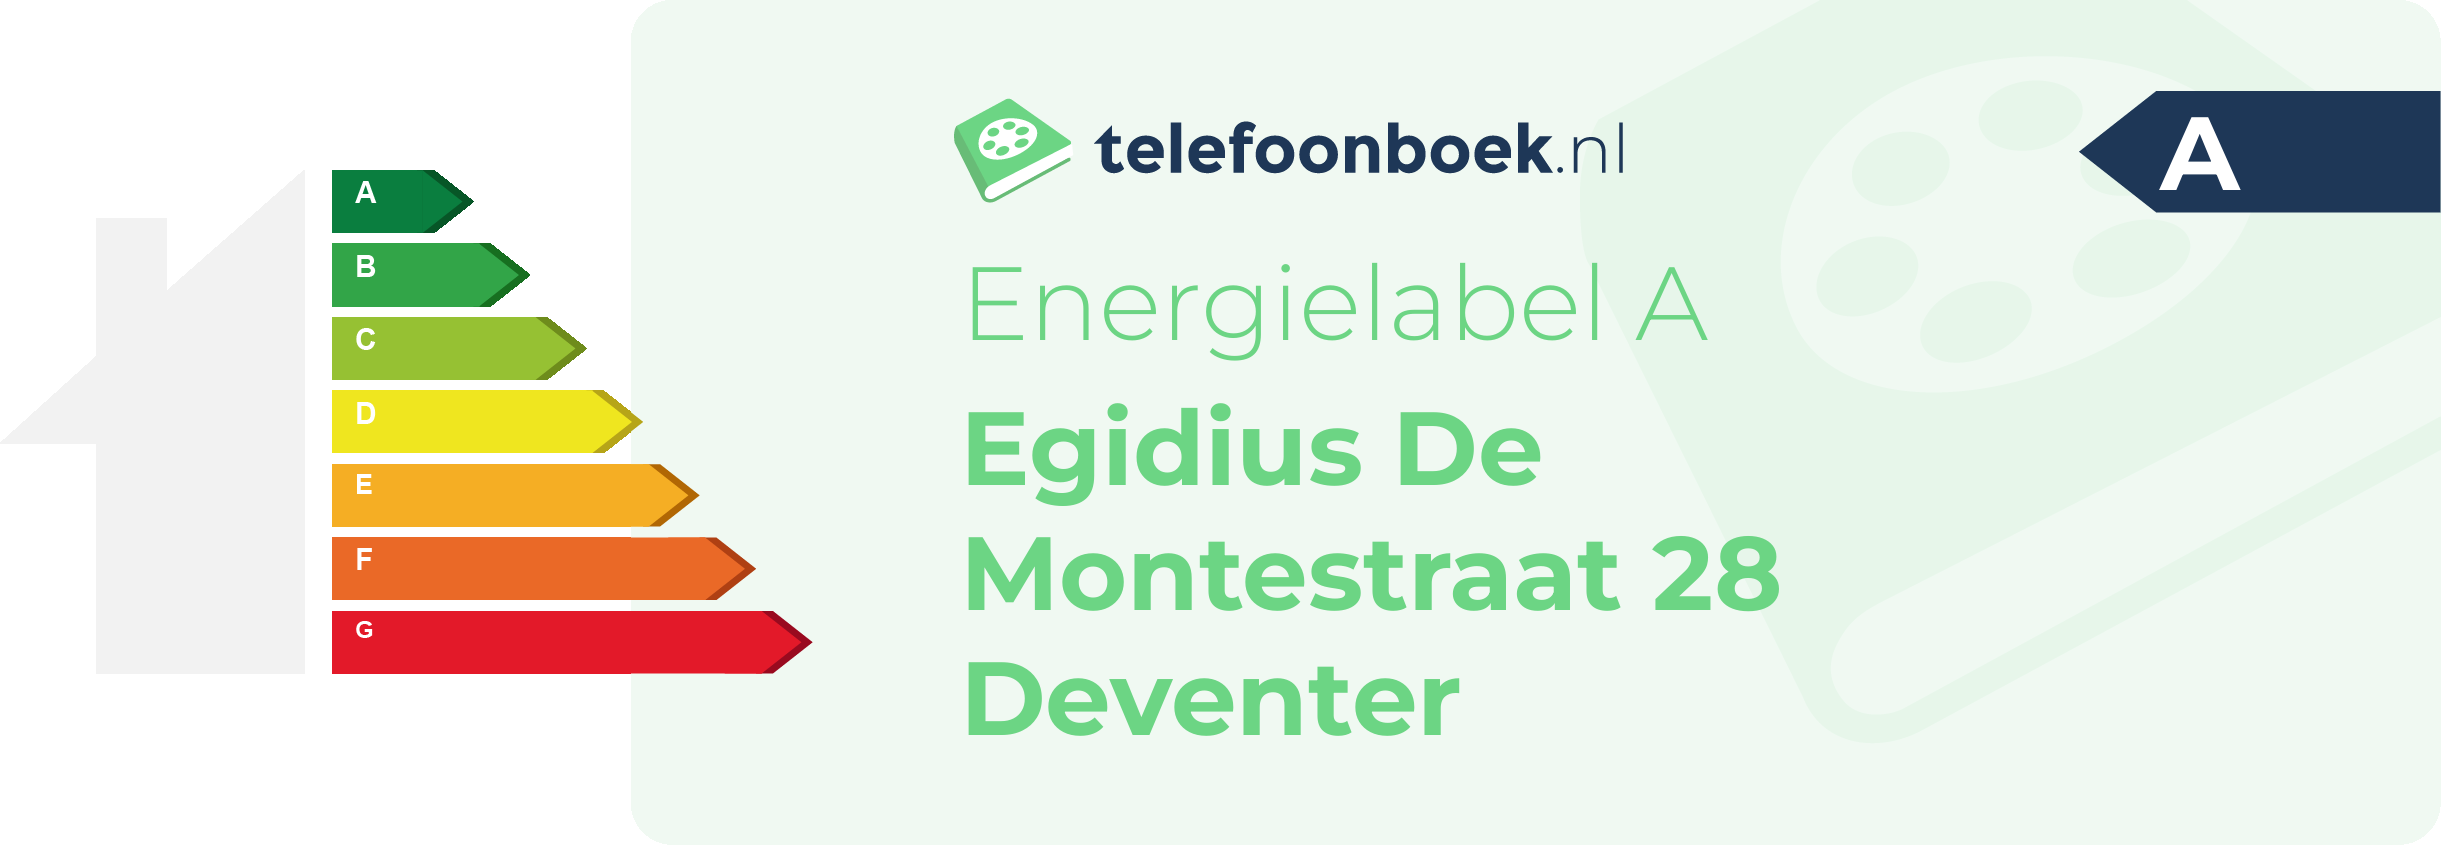 Energielabel Egidius De Montestraat 28 Deventer